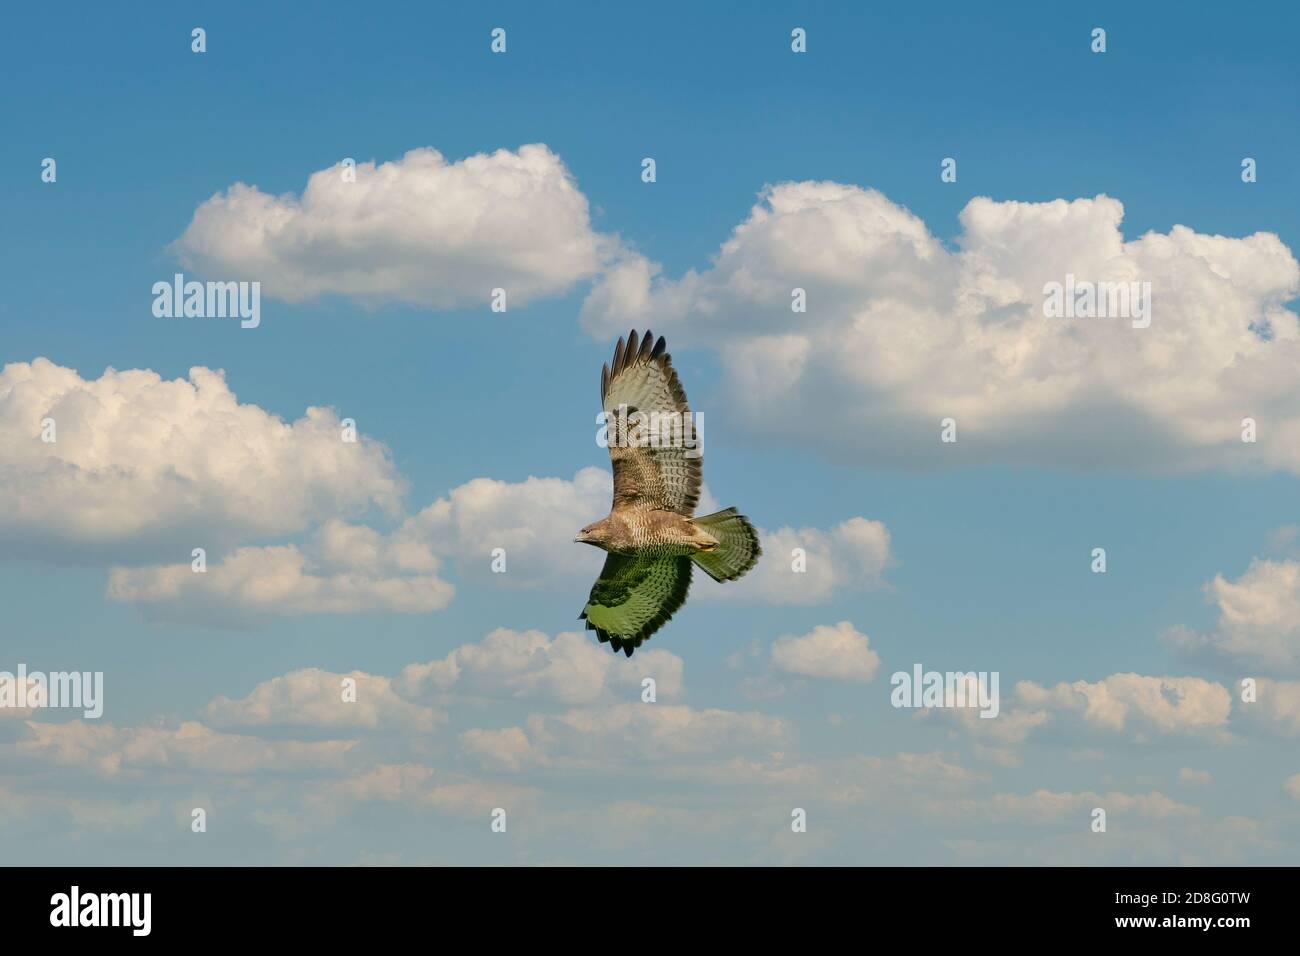 Ein gemeinsamer Bussardvogel, Vogel des Gebets, buteo buteo, im Flug gegen einen blauen Himmel und weiße Wolken Stockfoto